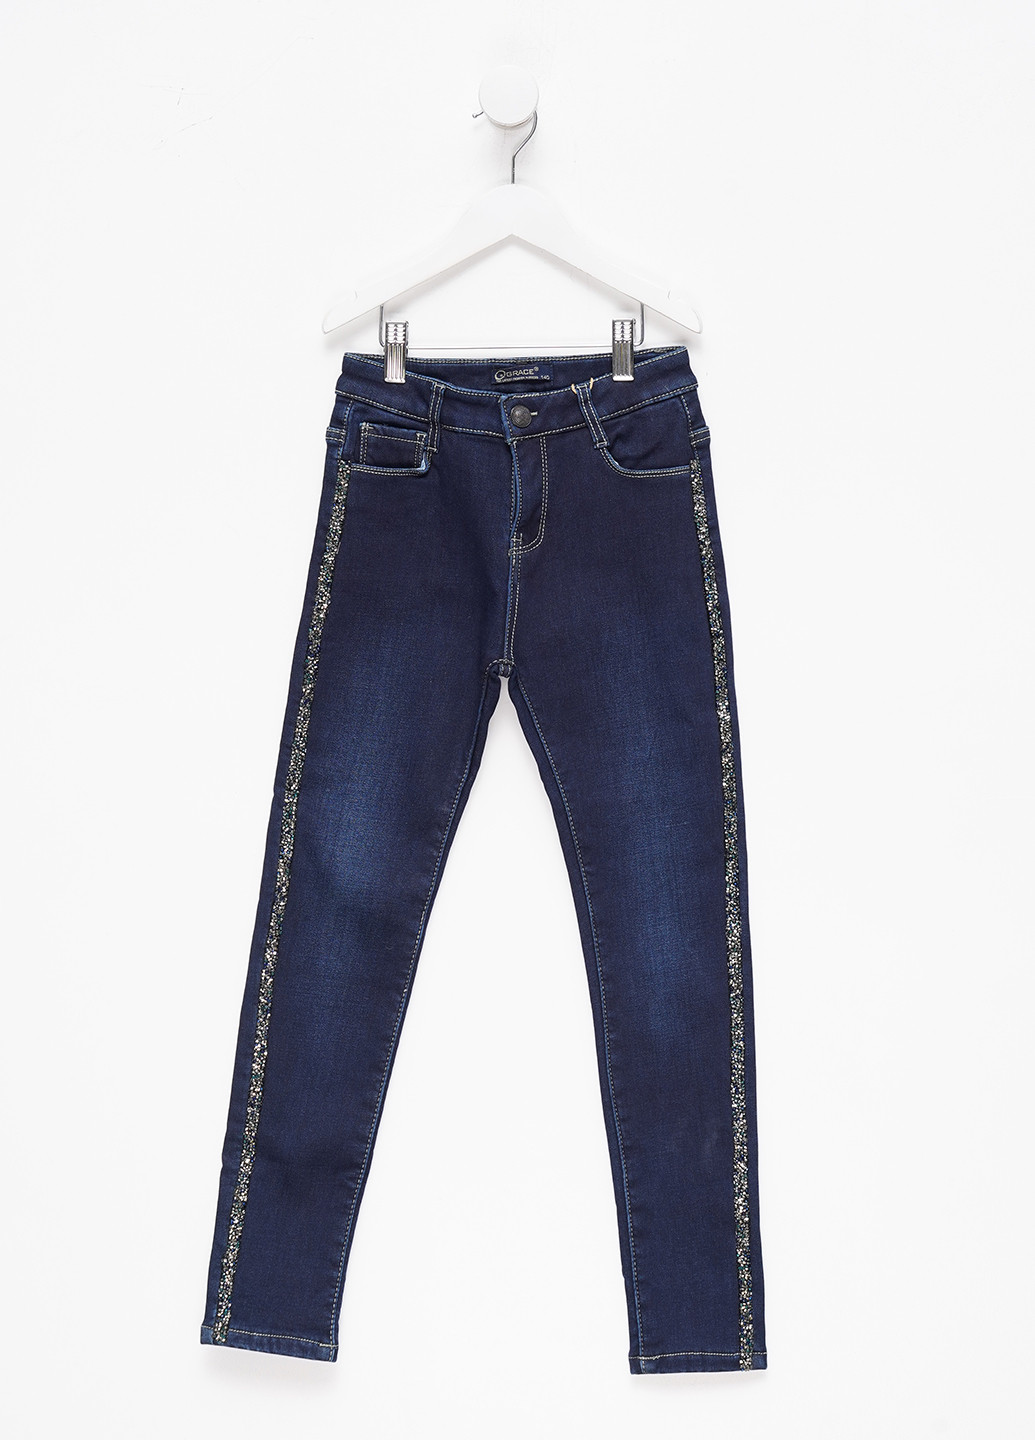 Темно-синие зимние зауженные джинсы для девочки утепленные флисом Grace